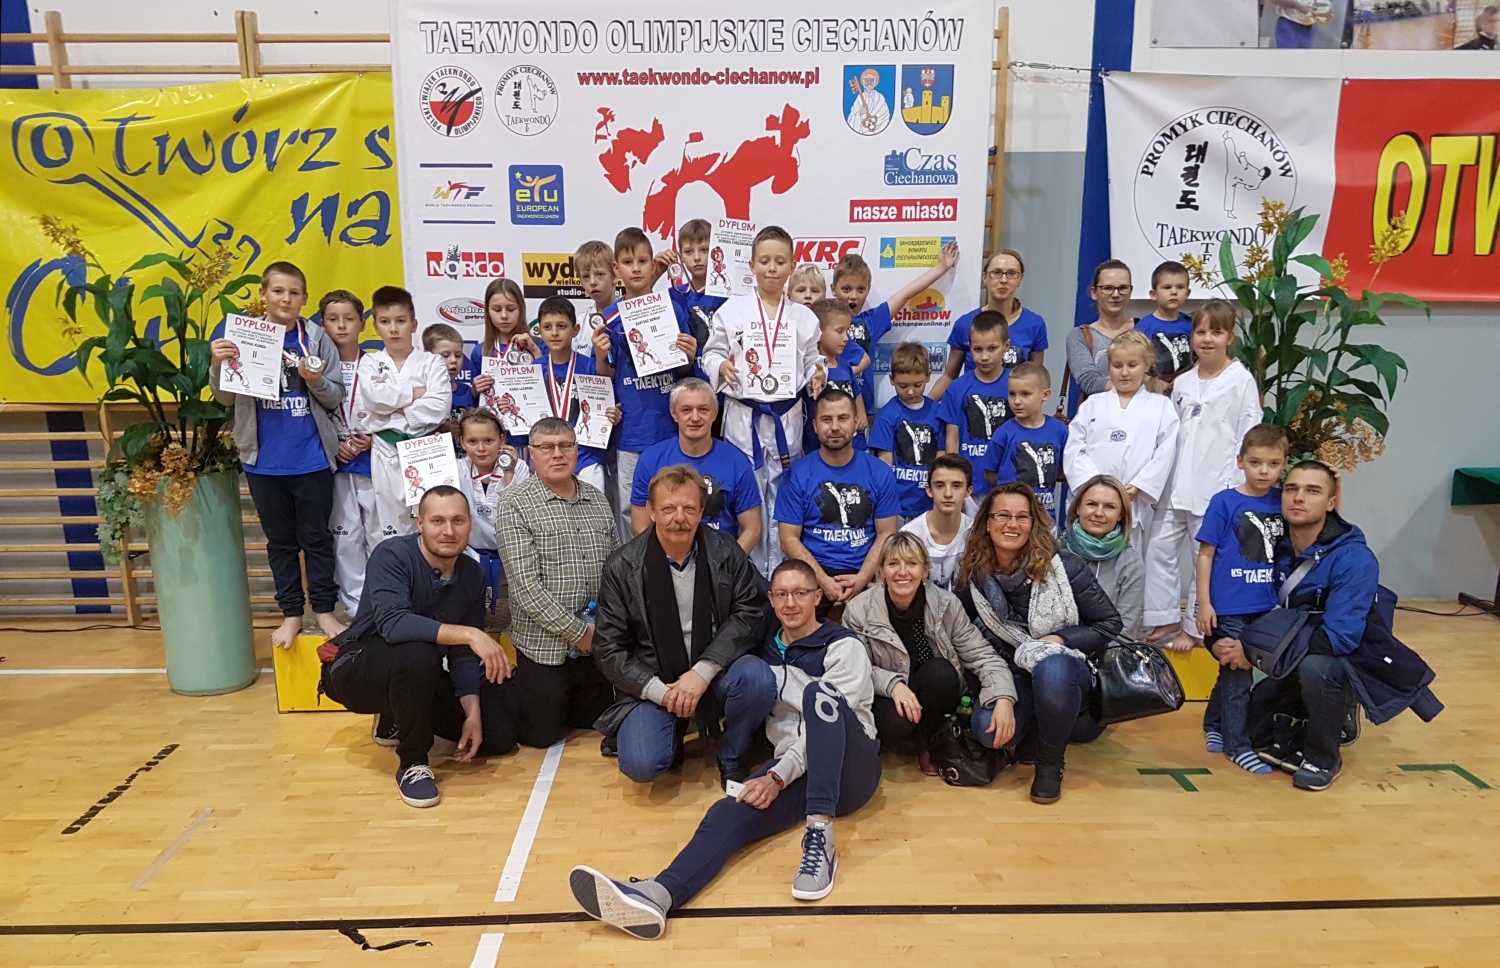 Otwarte Mistrzostwa Mazowsza Dzieci i Modzikw w Taekwondo Olimpijskim, Ciechanw 5.11.2016 r.